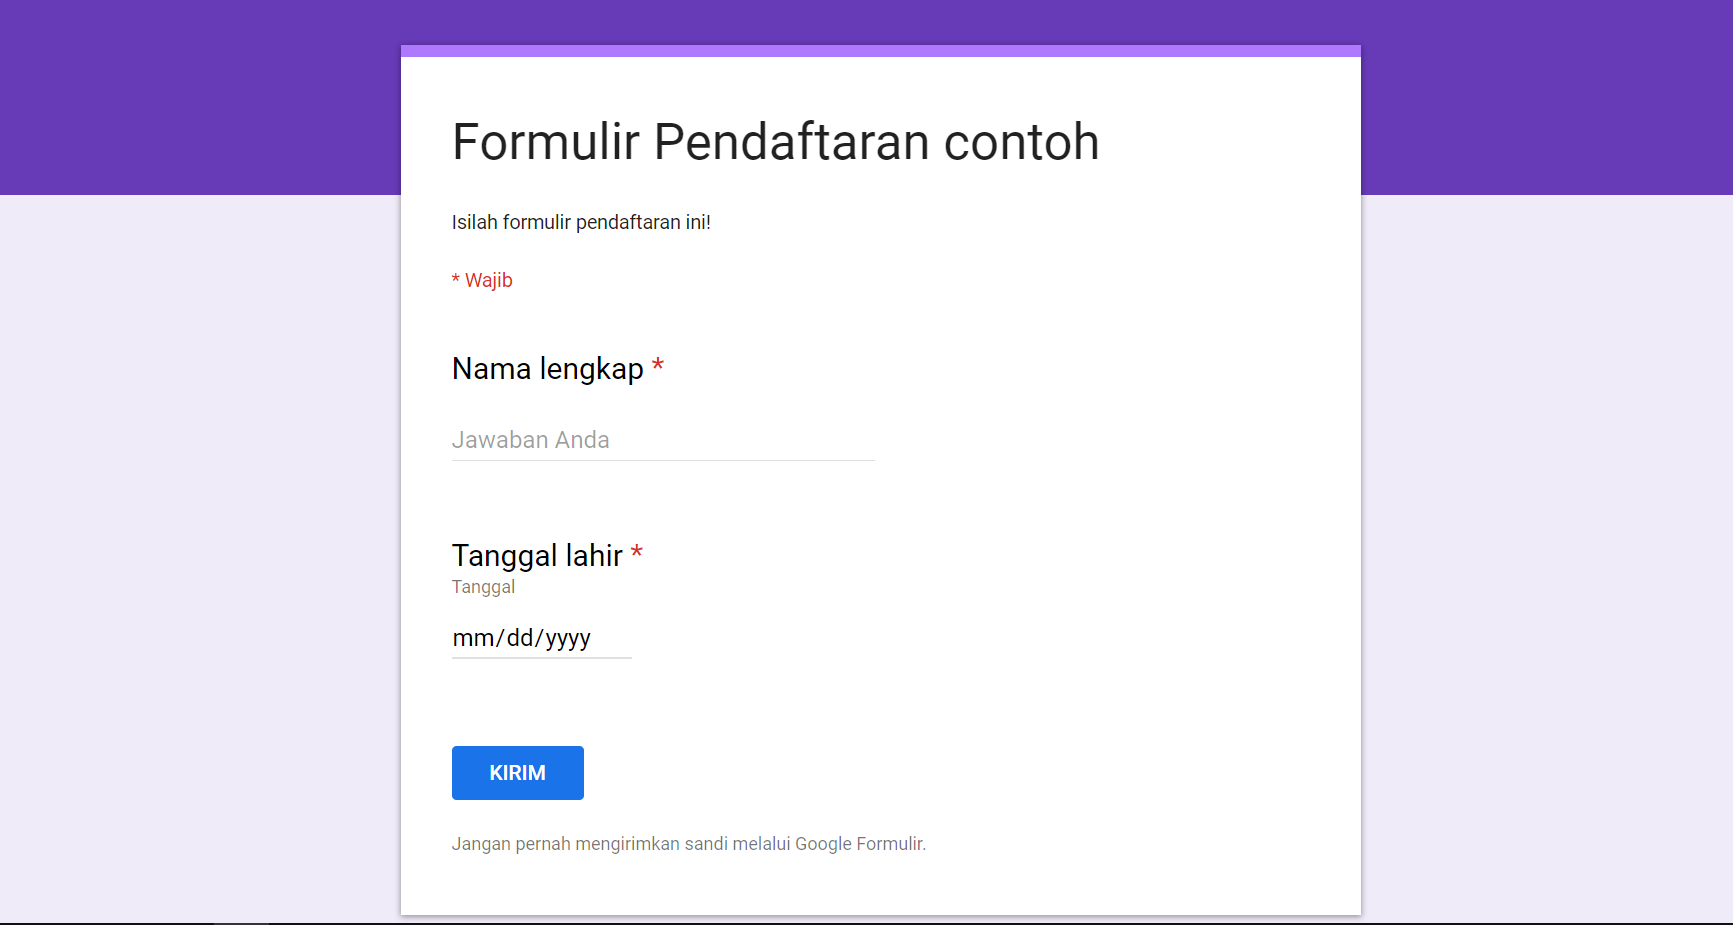 Cara Membuat Google Forms